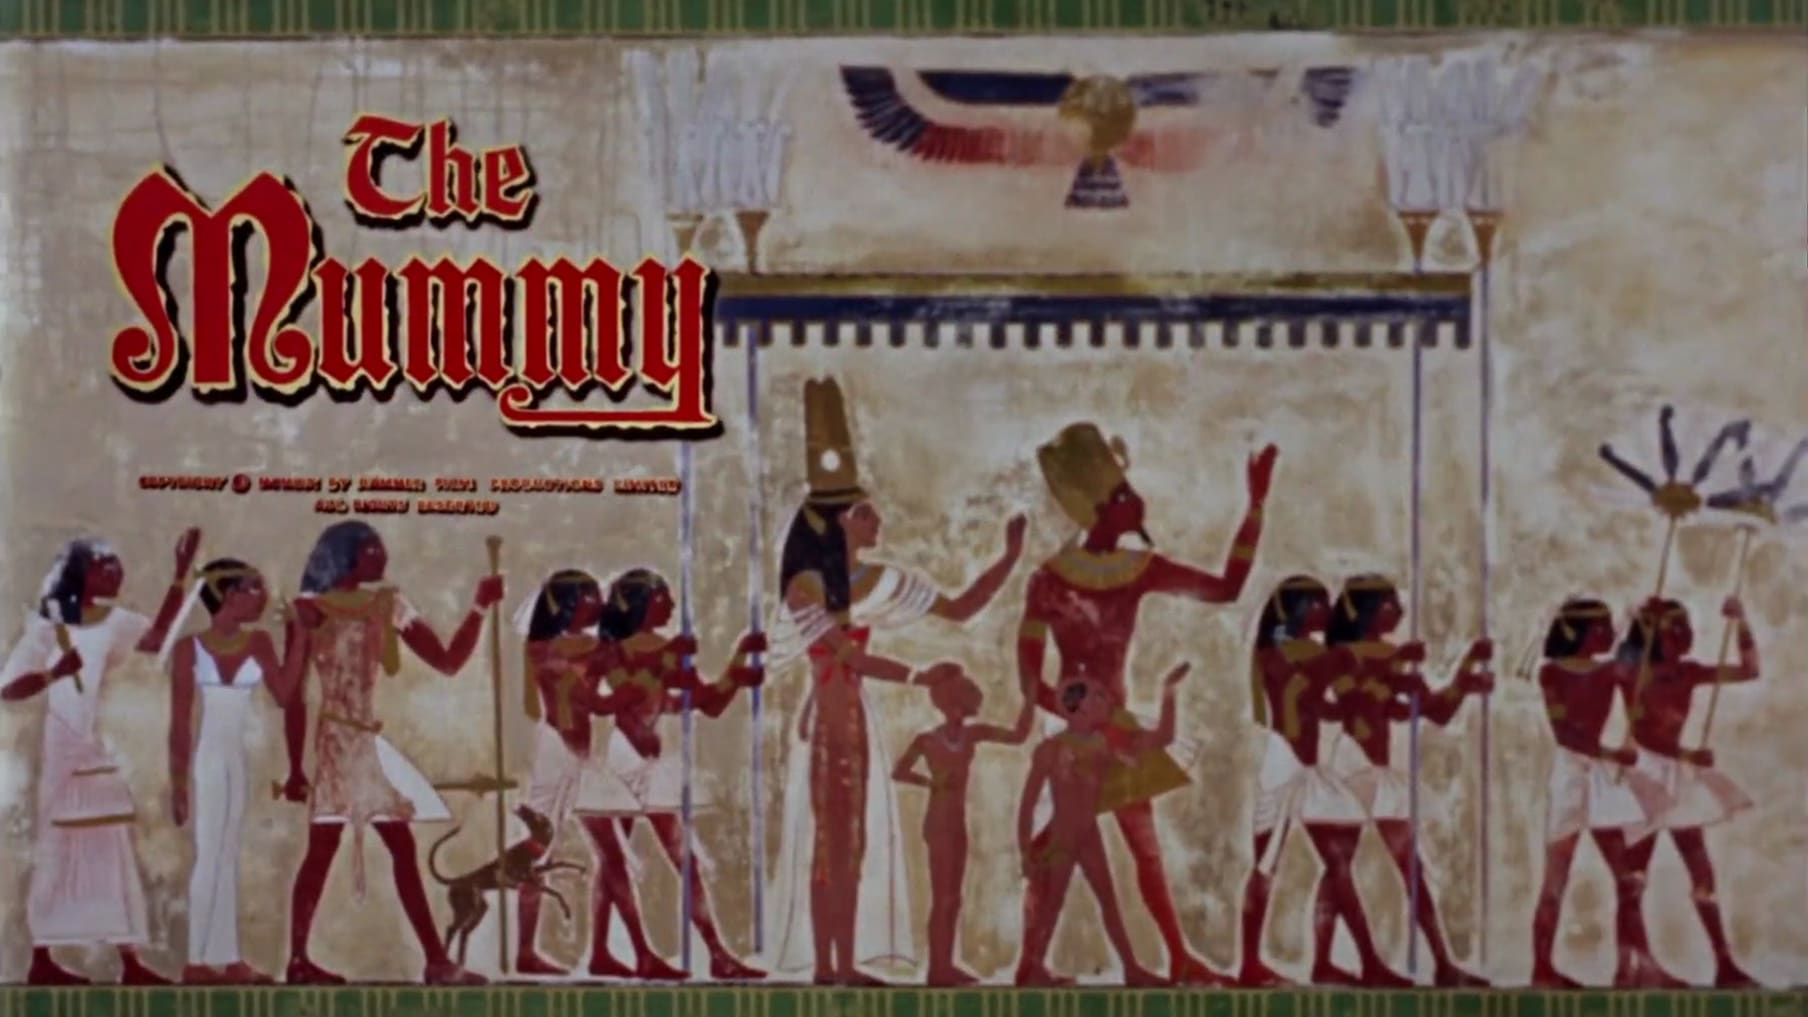 Die Rache der Pharaonen (1959)